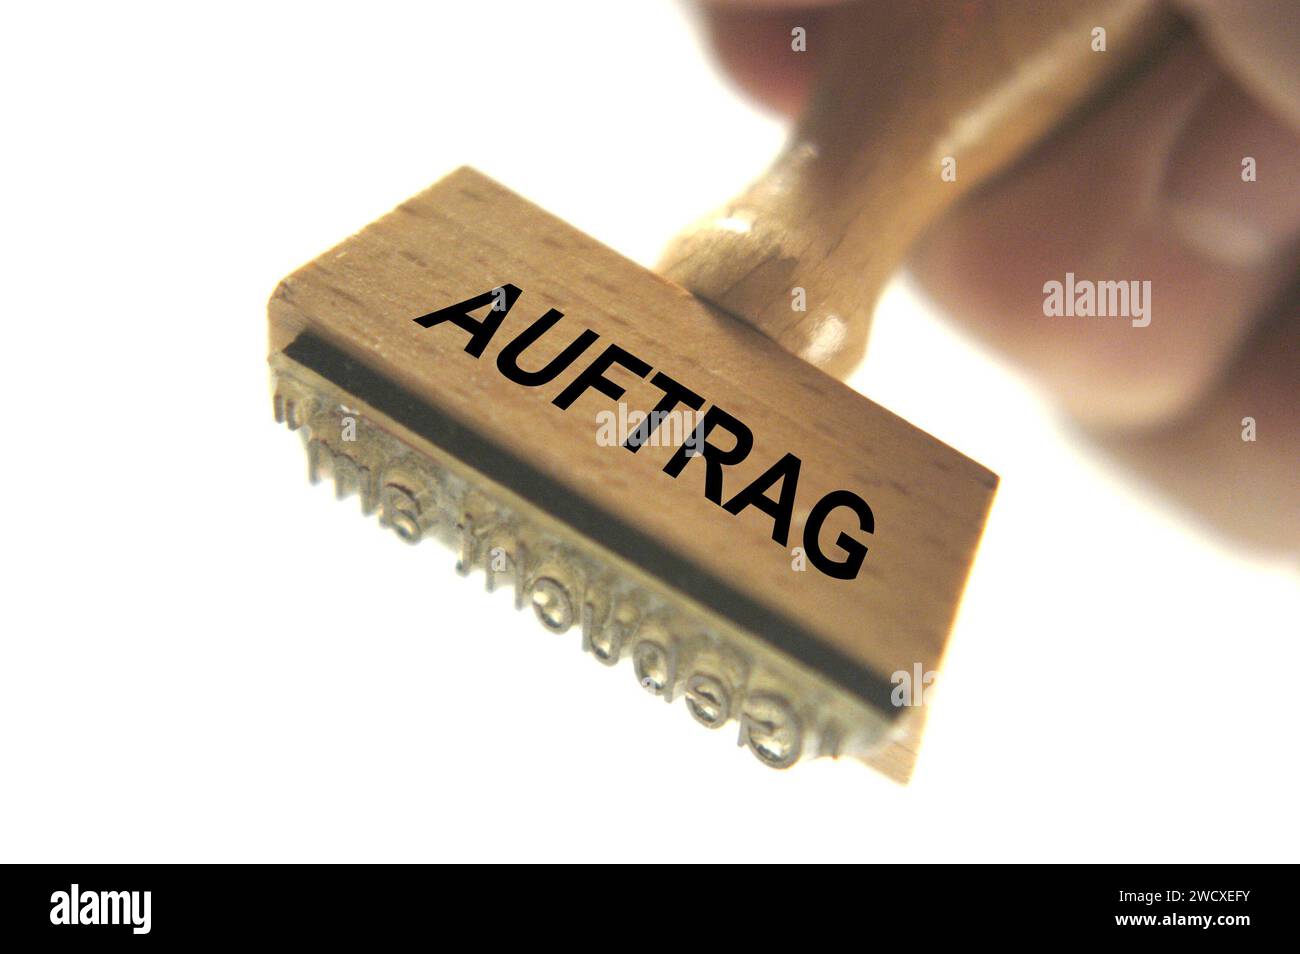 Stempel mit der Aufschrift - Auftrag - , Deutschland, BLF *** timbro con l'iscrizione Auftrag , Germany, BLF STEM 017 Foto Stock